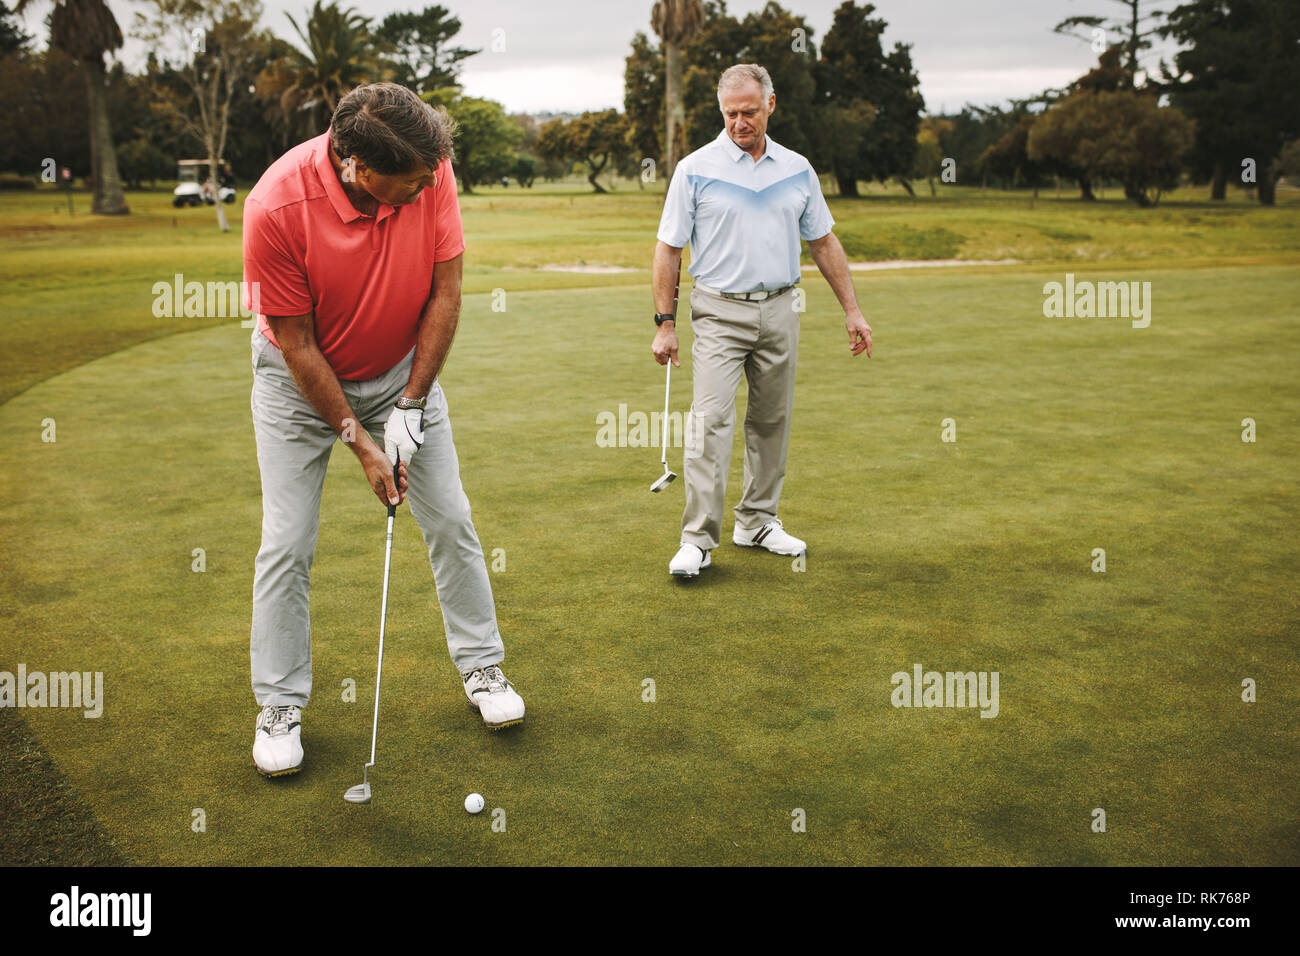 Ältere Golfspieler auf putting green Über den Schuß zu nehmen. Männliche Golf Spieler setzen auf Grün mit zweiten Spieler, der an der Rückseite. Stockfoto